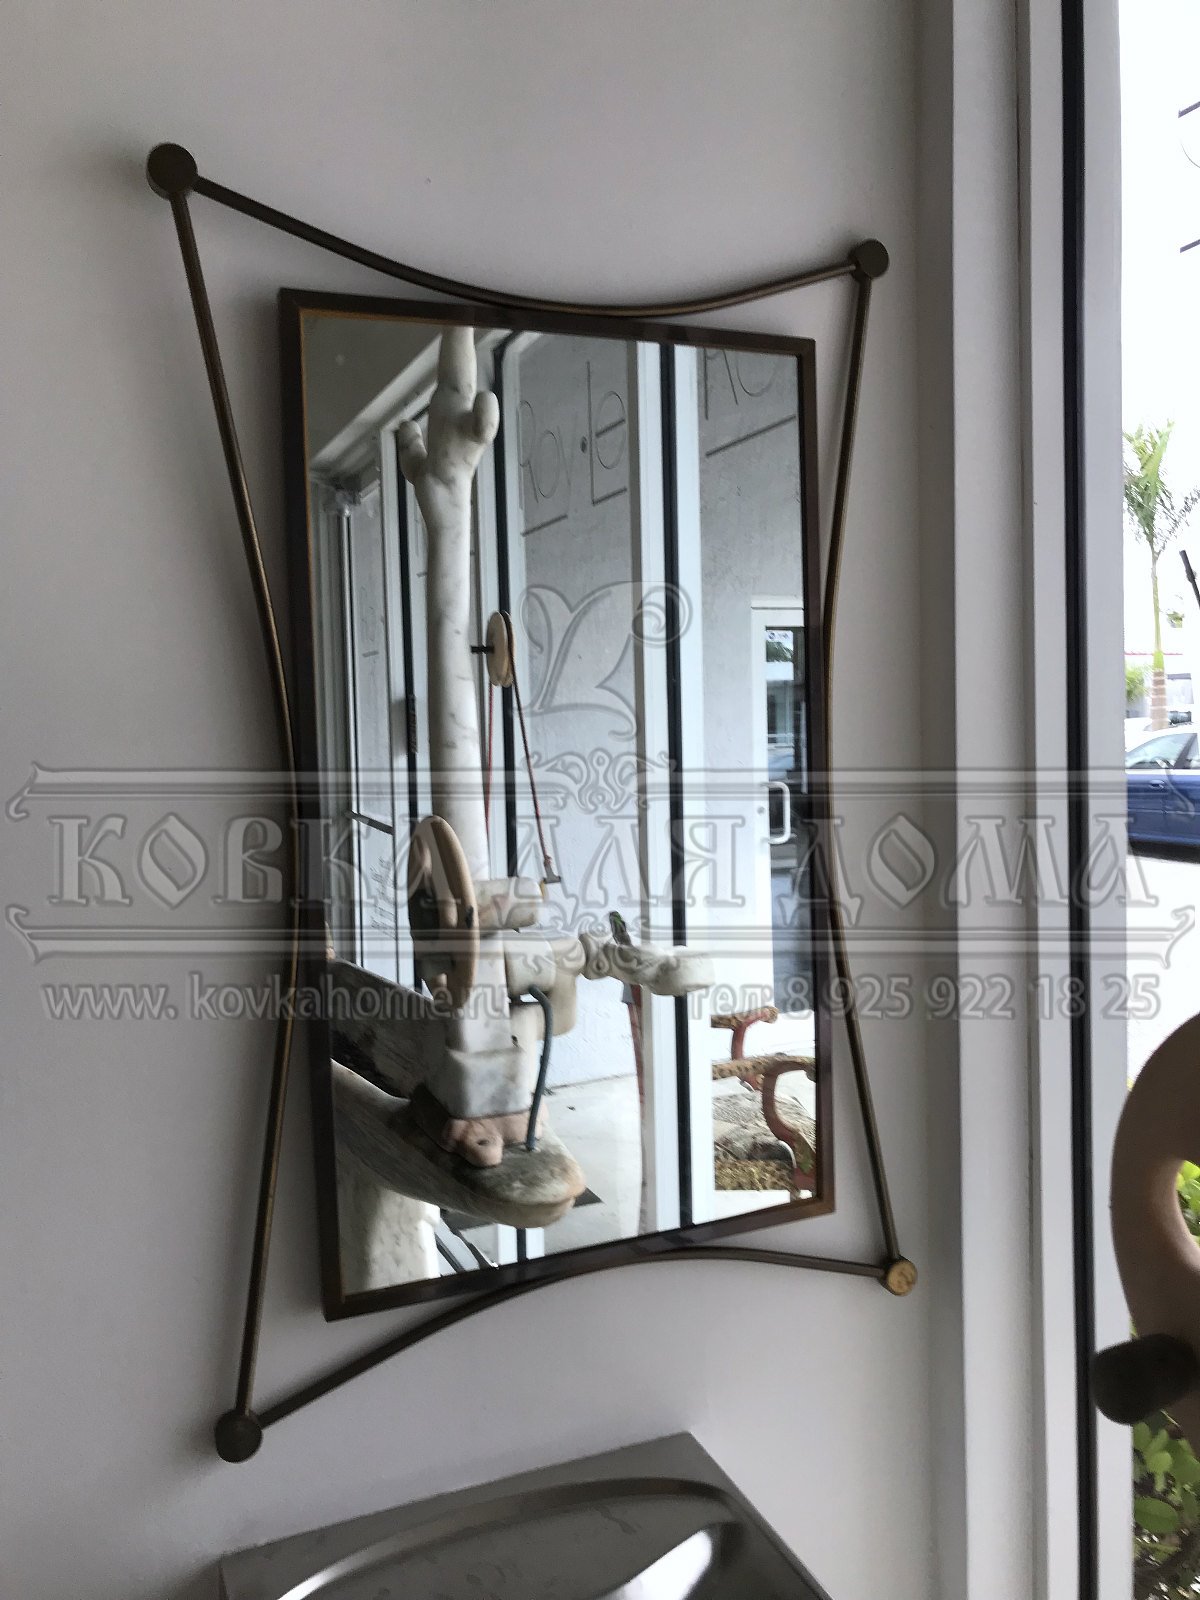 Зеркало в винтажном стиле в медной оригинальной раме, настенное ручной работы